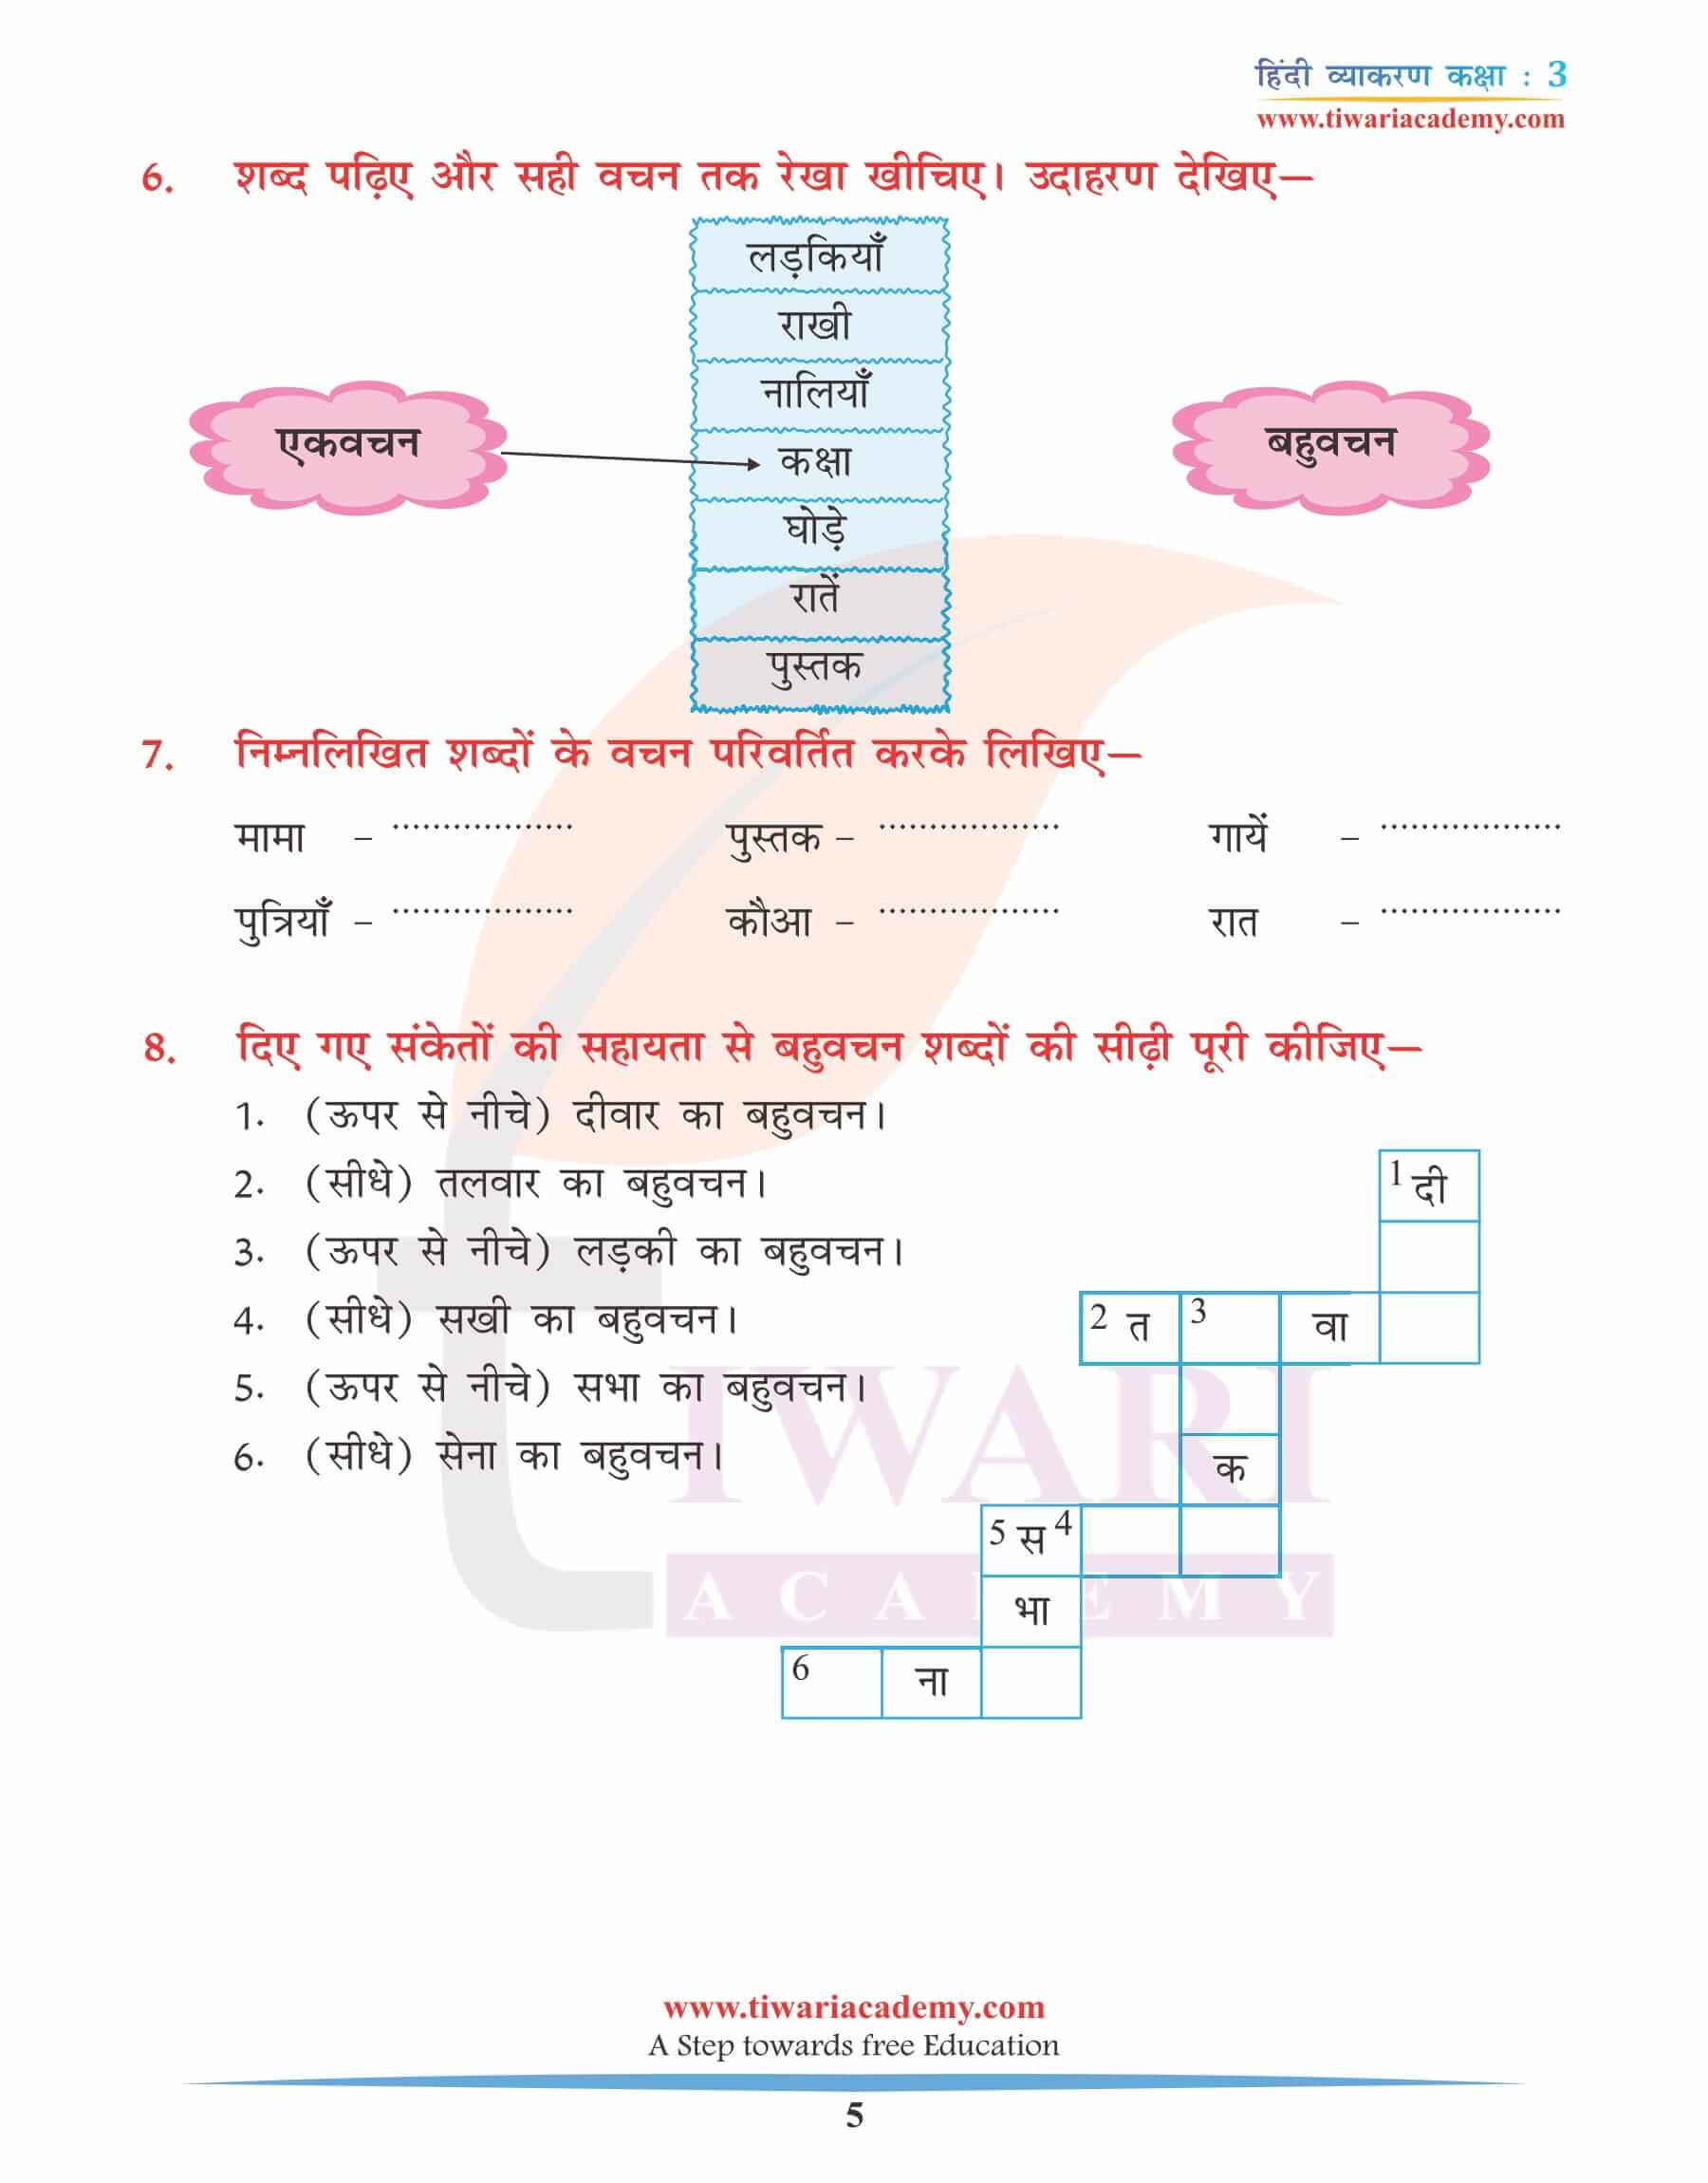 कक्षा 3 के लिए हिंदी व्याकरण अध्याय 5 सर्वनाम